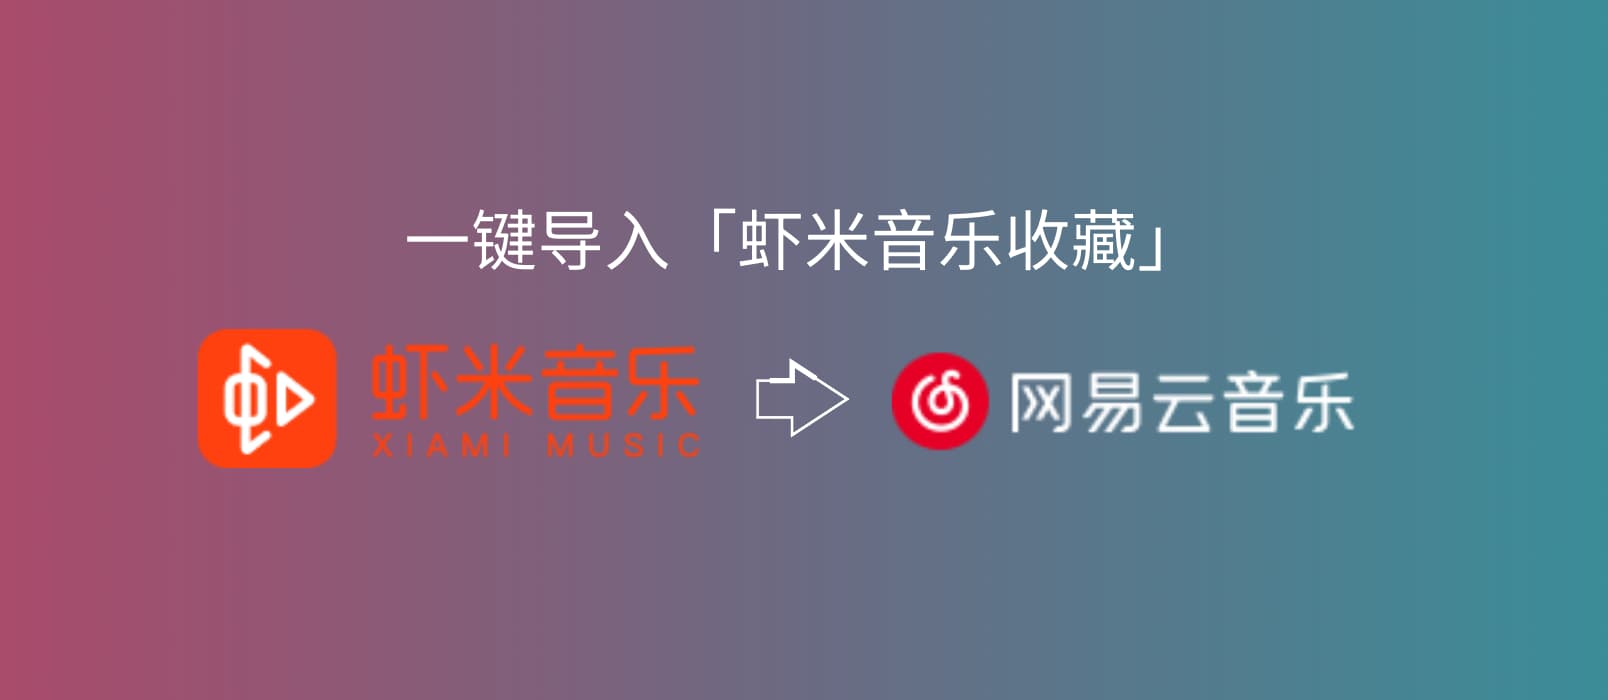 网易云音乐、QQ 音乐均已推出一键导入「虾米音乐收藏」服务 1